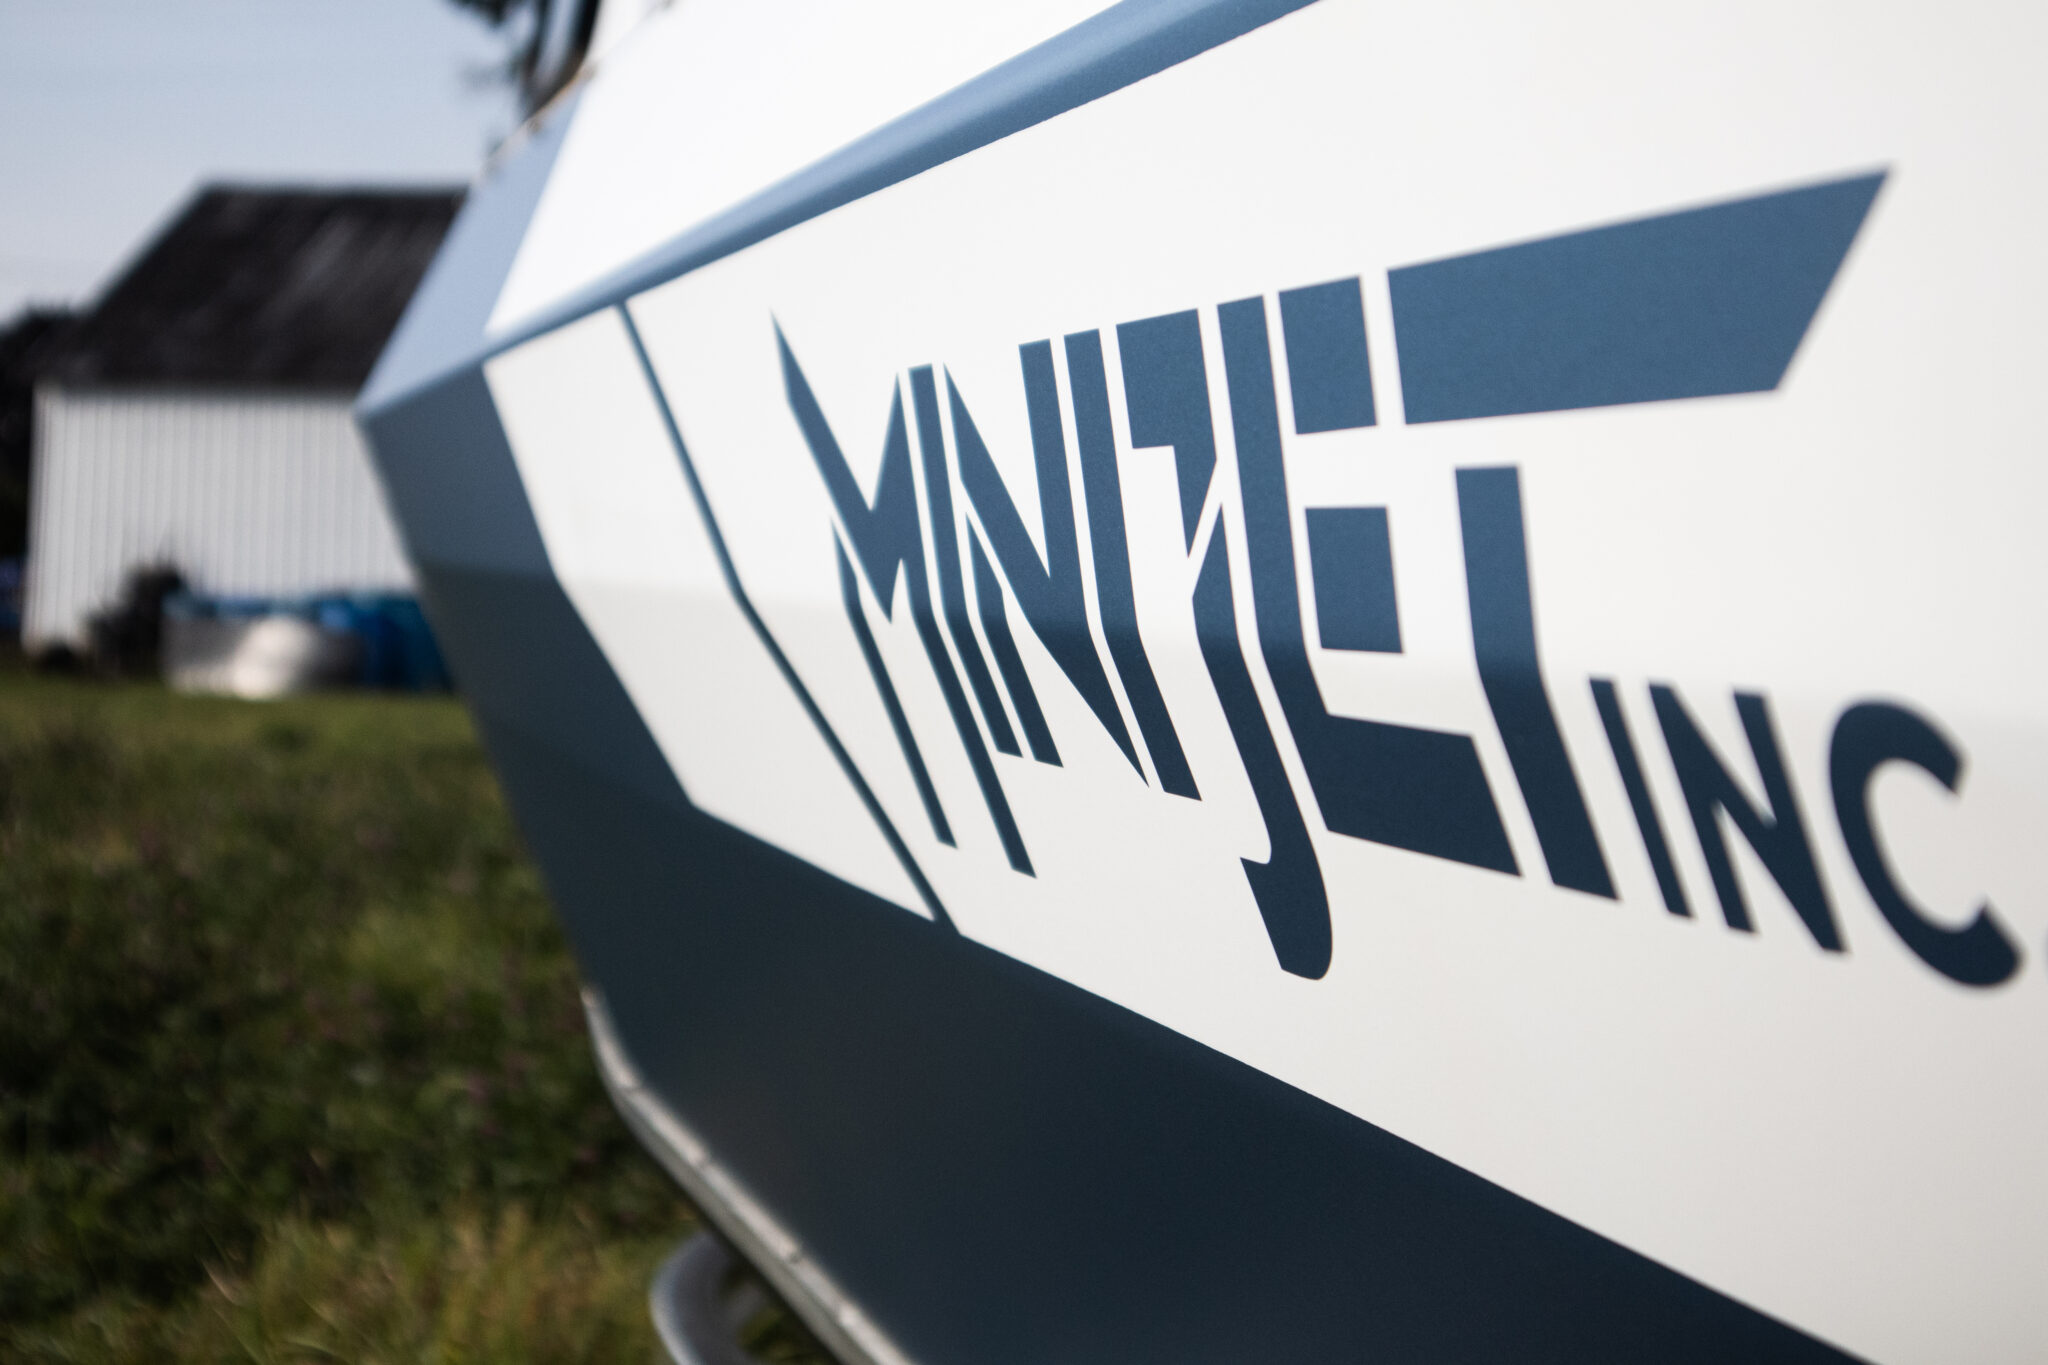 Minijet boat side profile detail